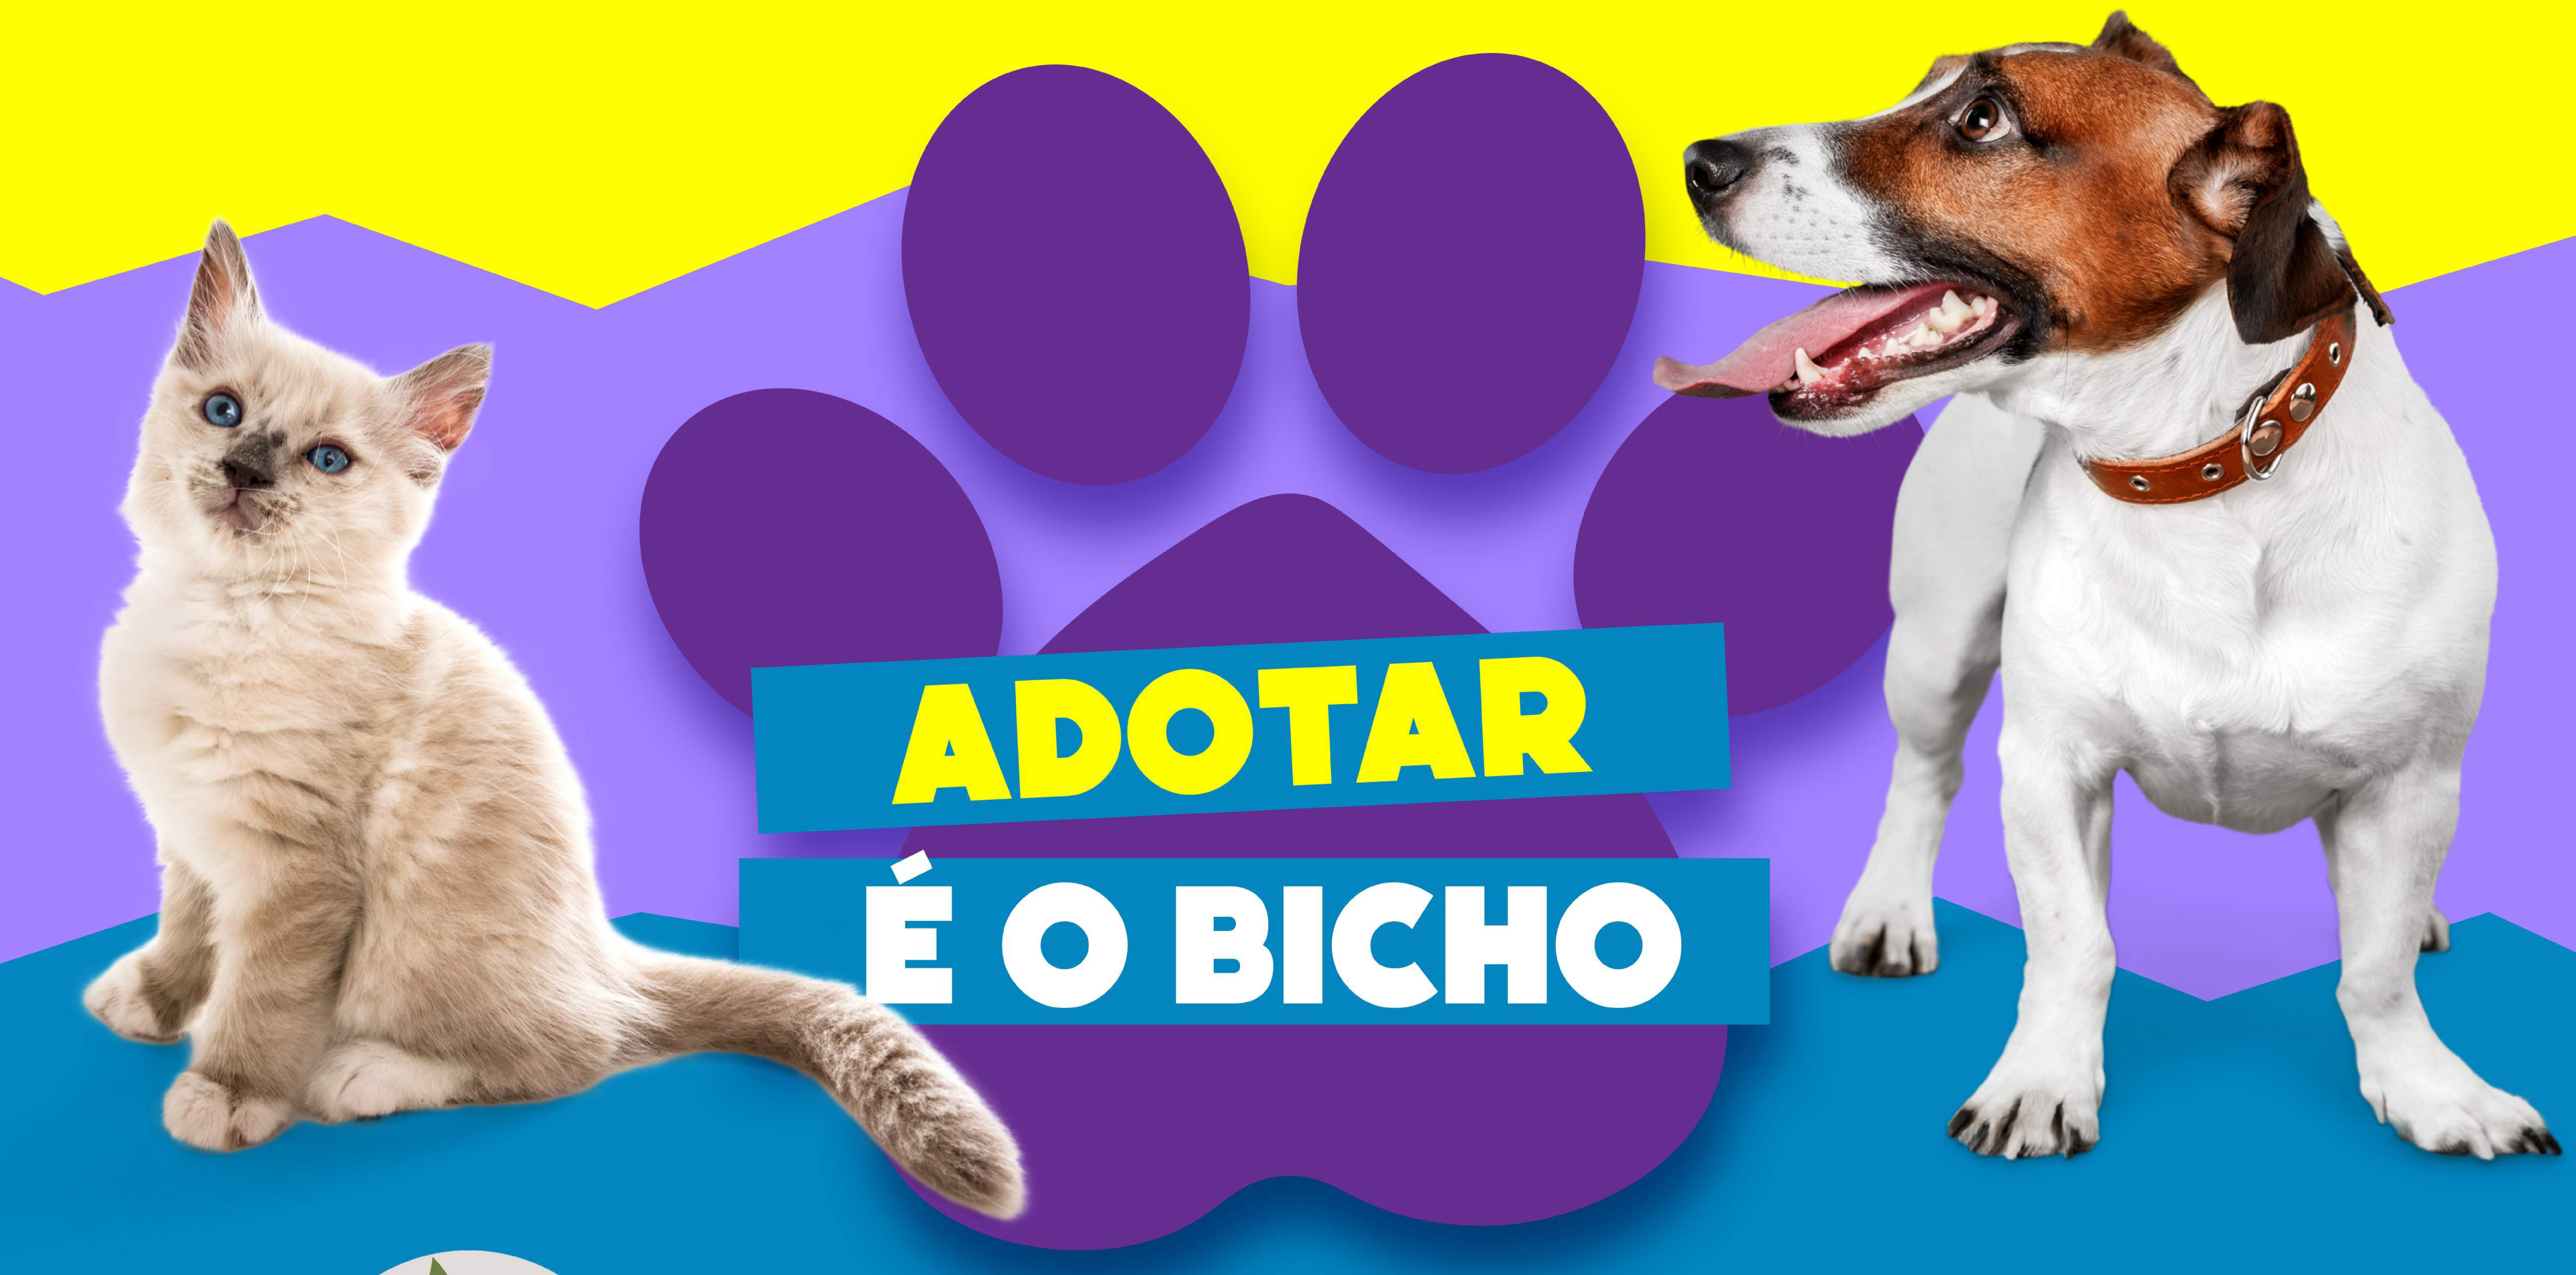 Adotar é o Bicho,  Semam e Zoonoses  de João Pessoa promovem evento de adoção de animais neste sábado